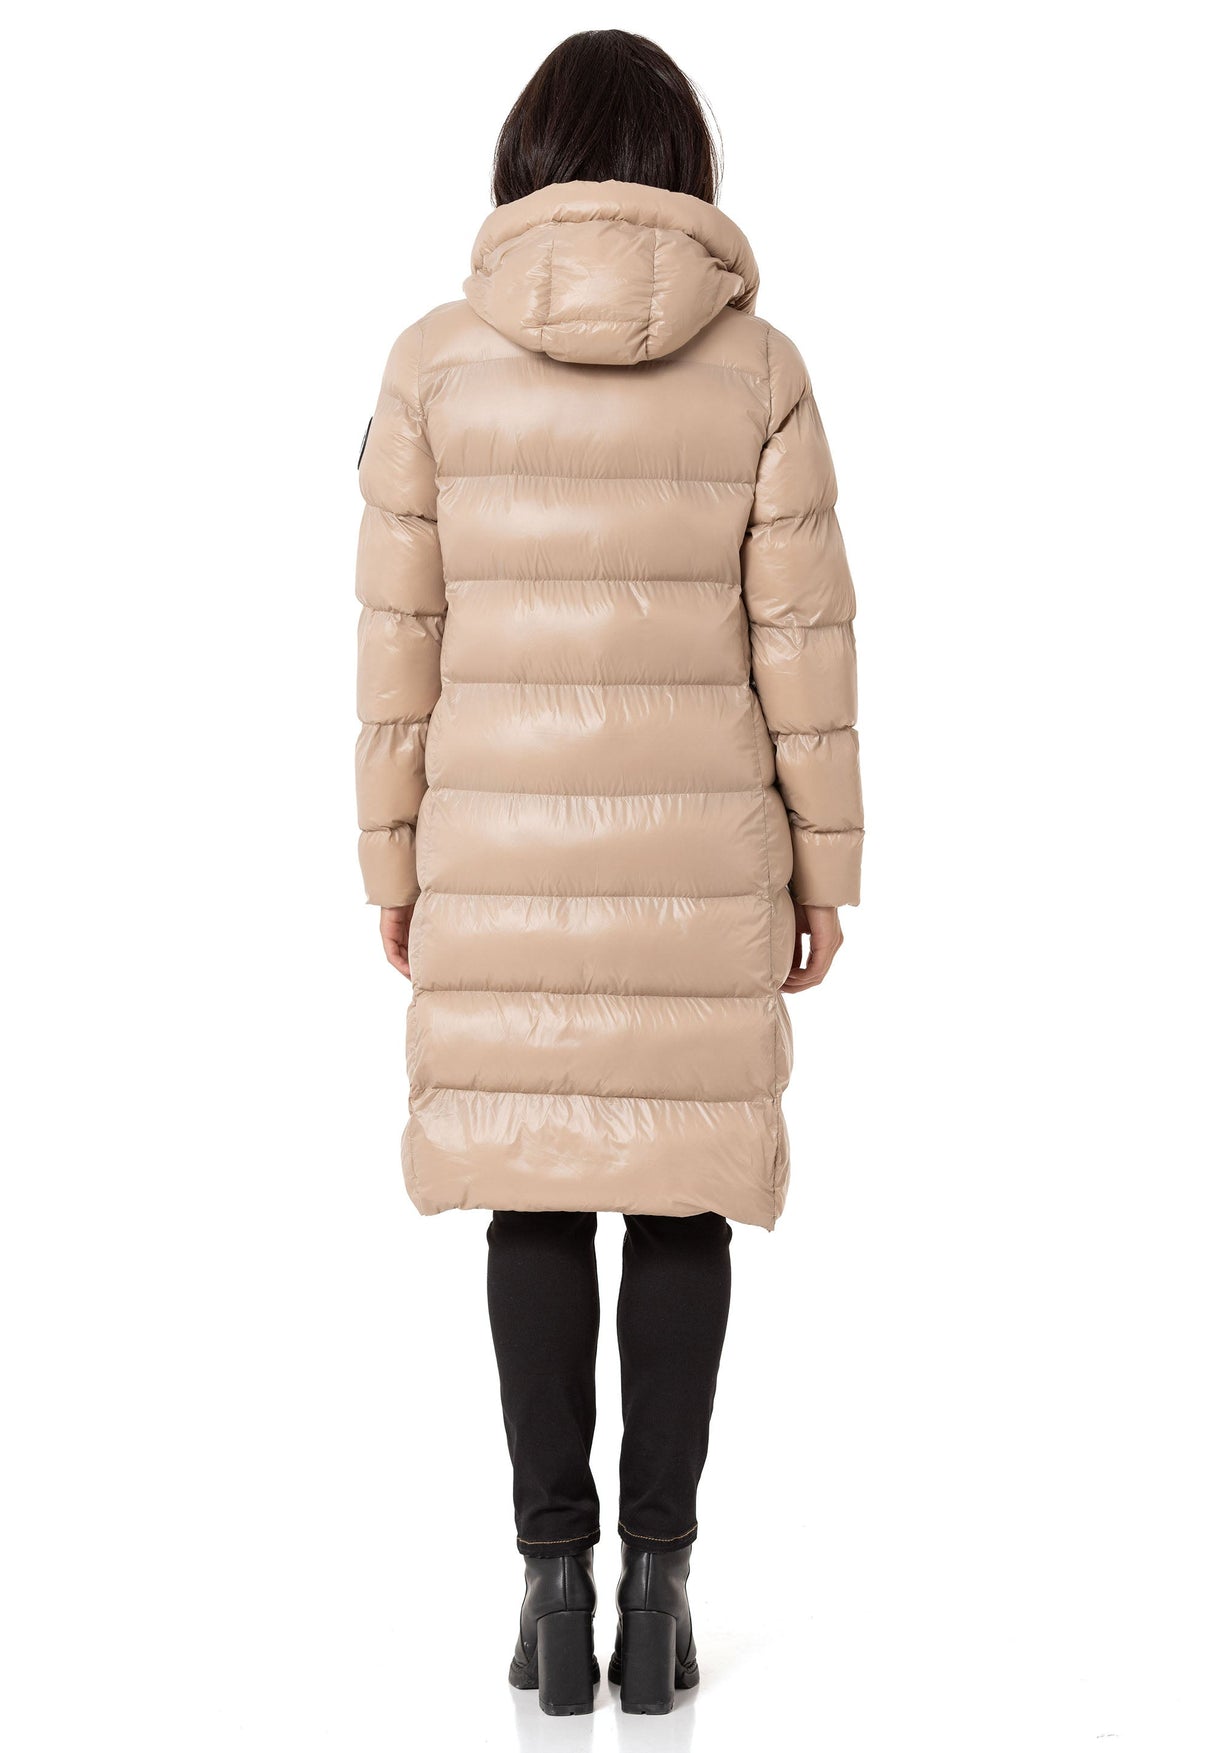 WM137 Mateau de courtepointe de veste d'hiver pour femmes en design élégant